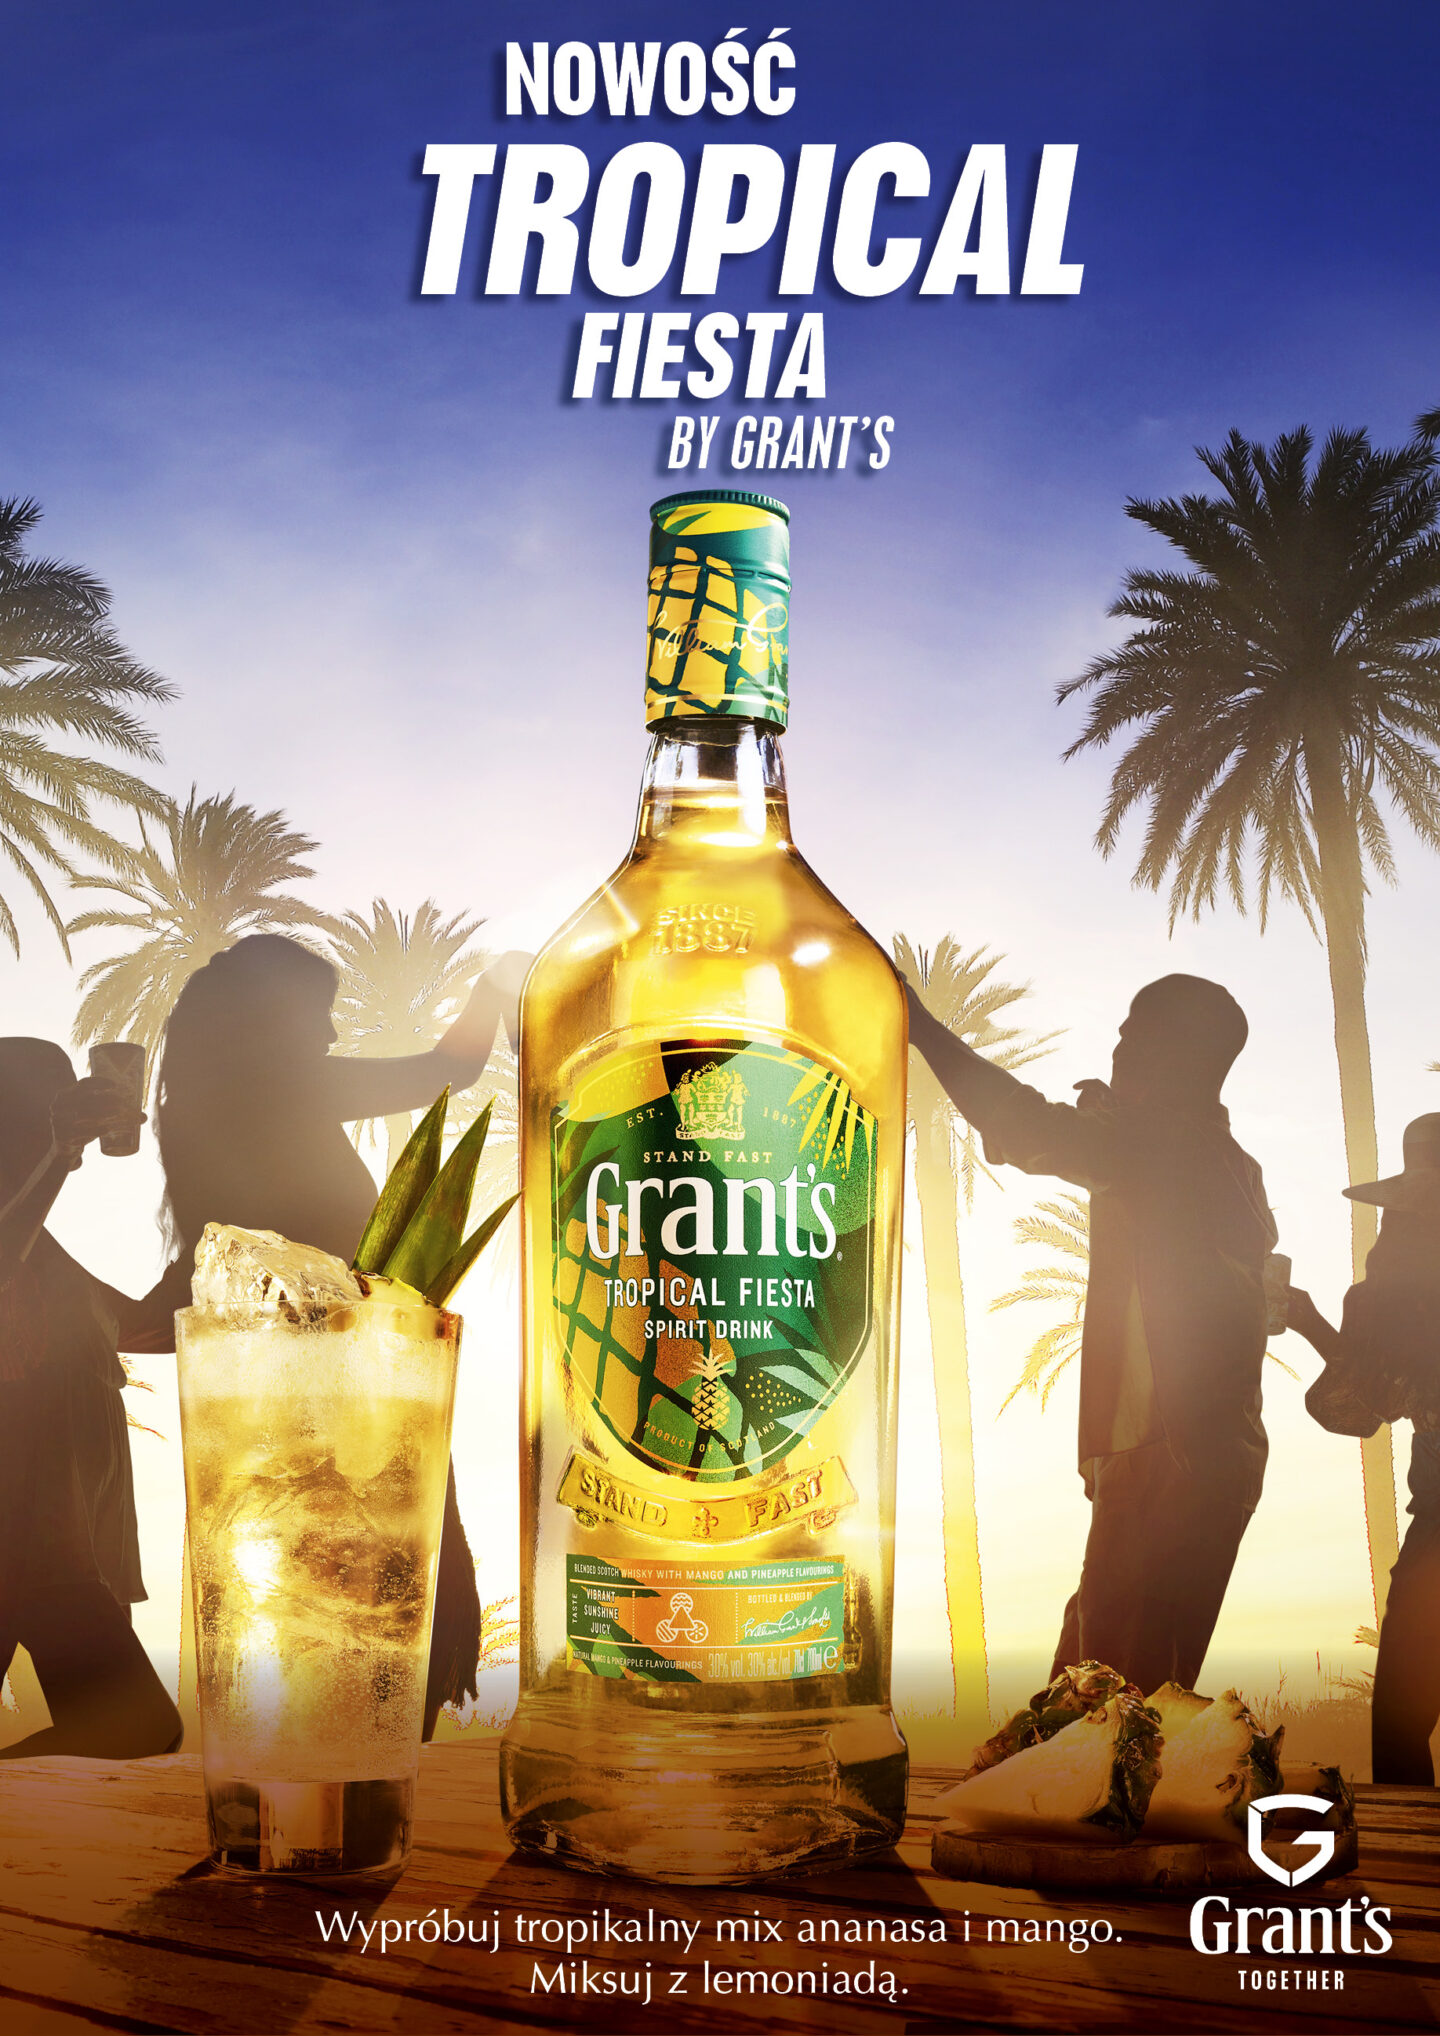 Rozkoszuj się tropikalnym szaleństwem smaku z Grant’s Tropical Fiesta!